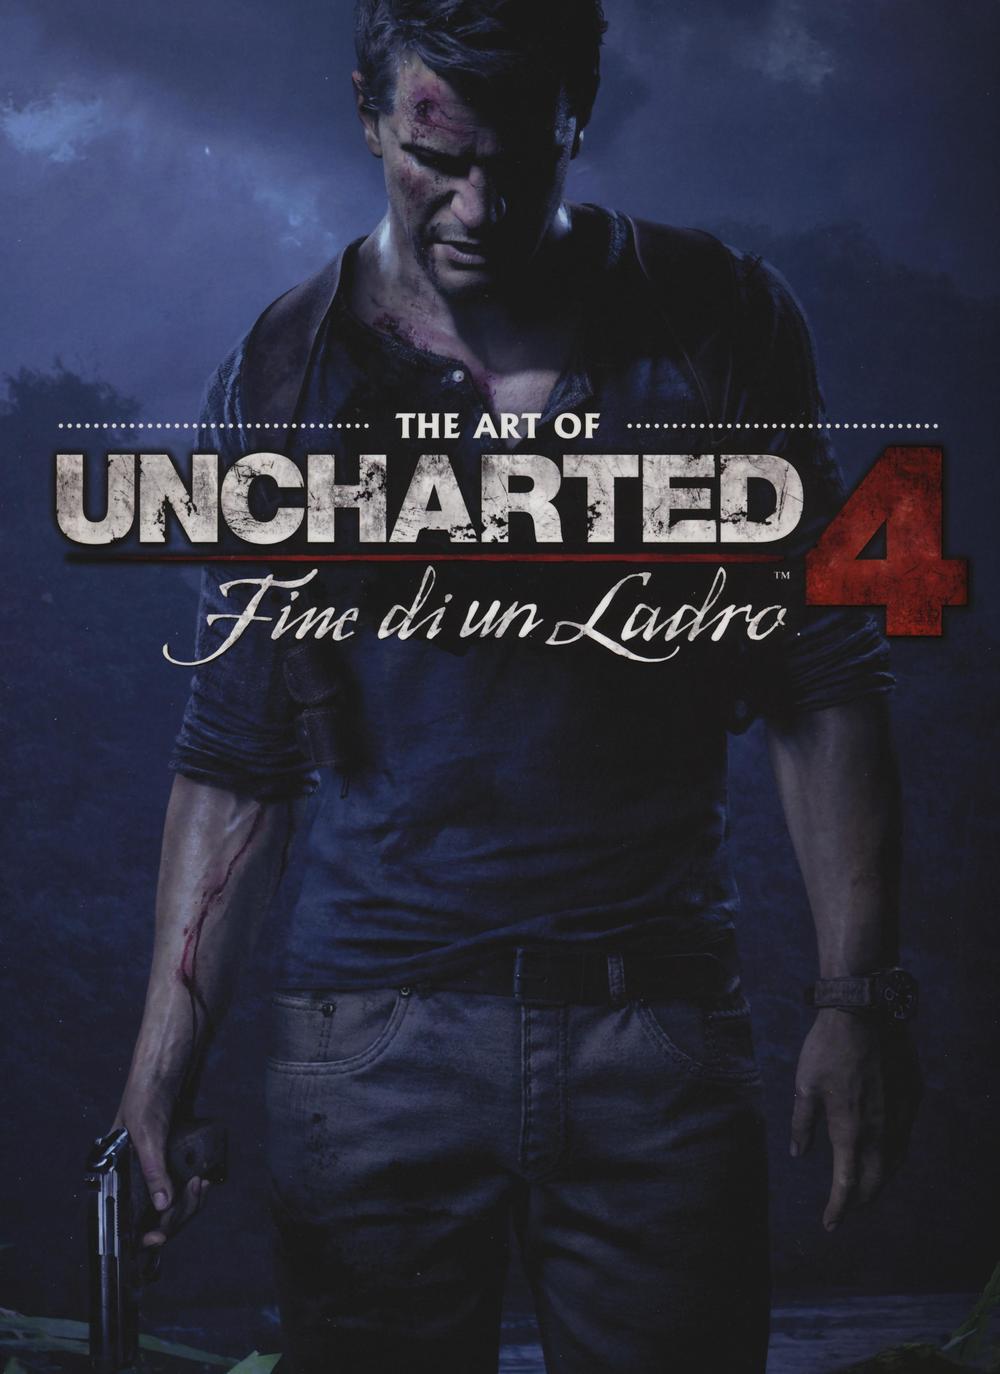 The art of uncharted 4. Fine di un ladro. Ediz. illustrata